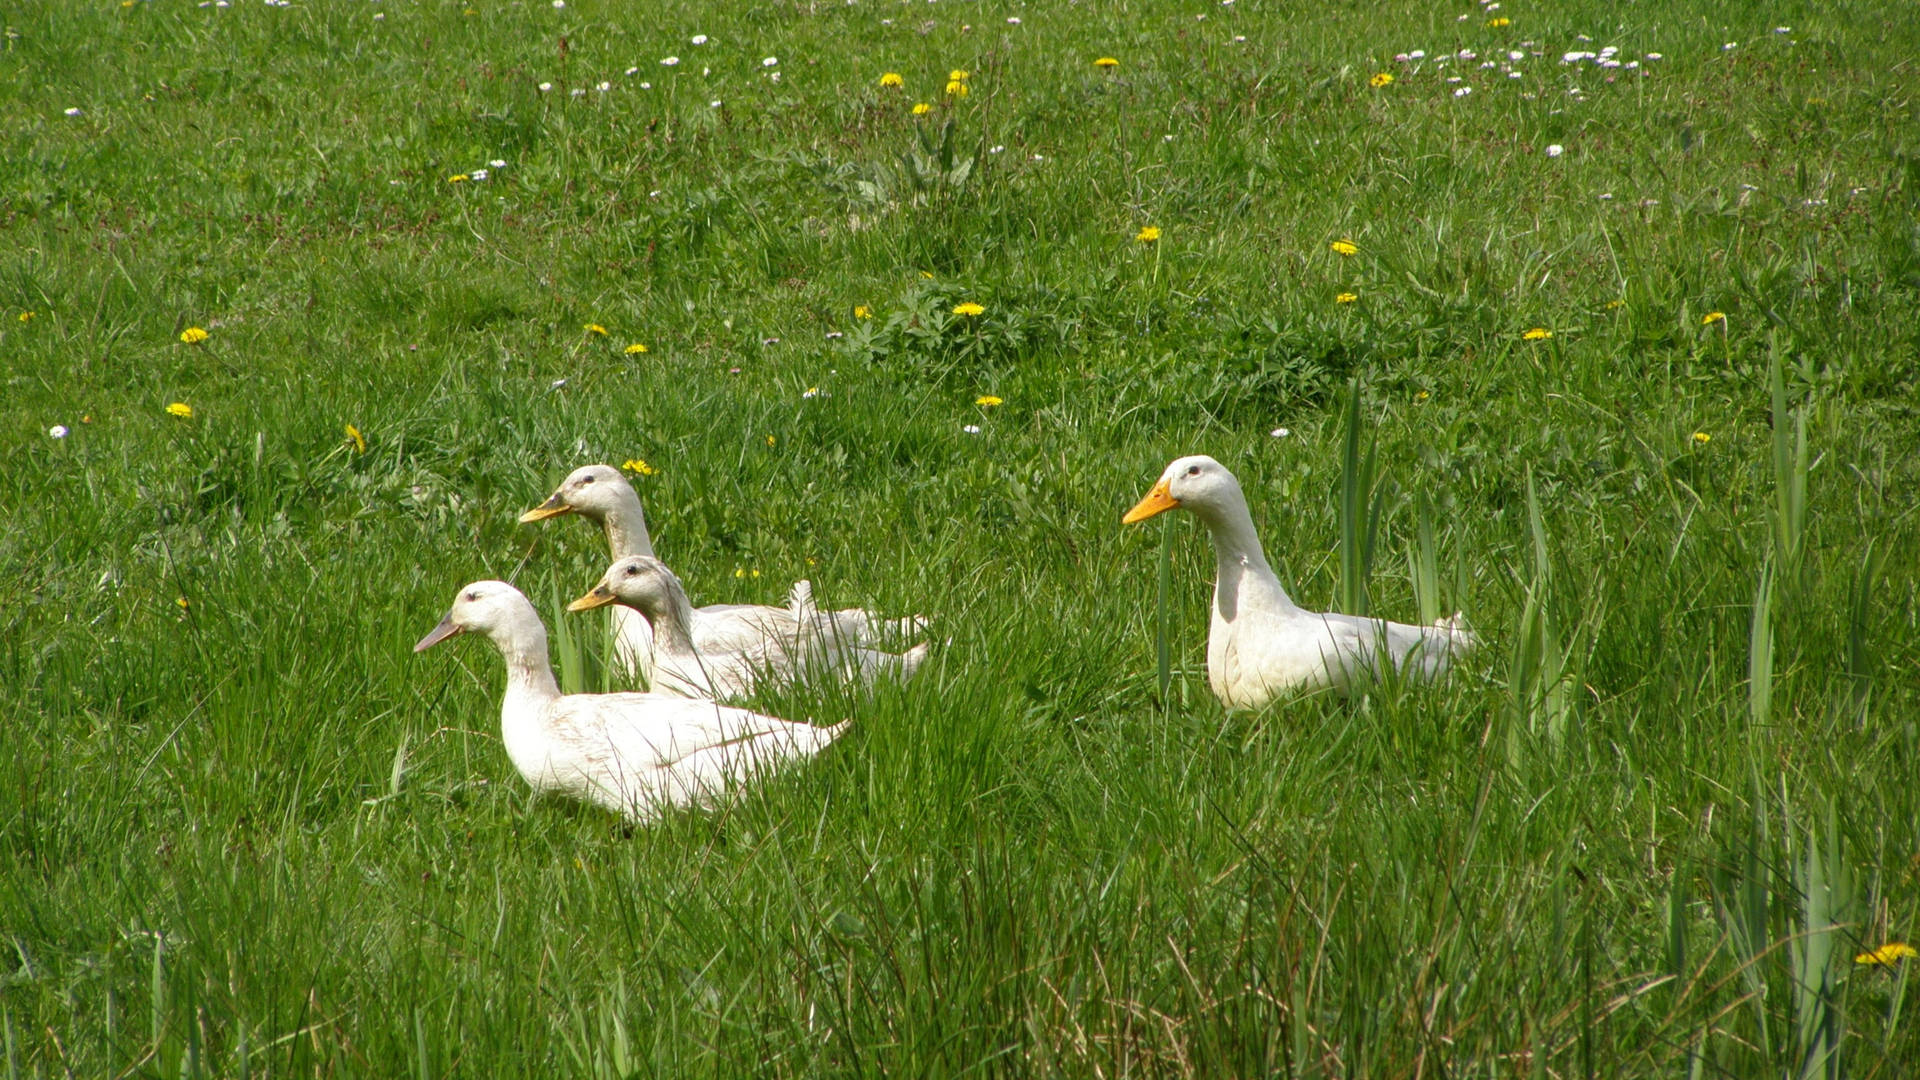 White Ducks In Grass Wallpaper